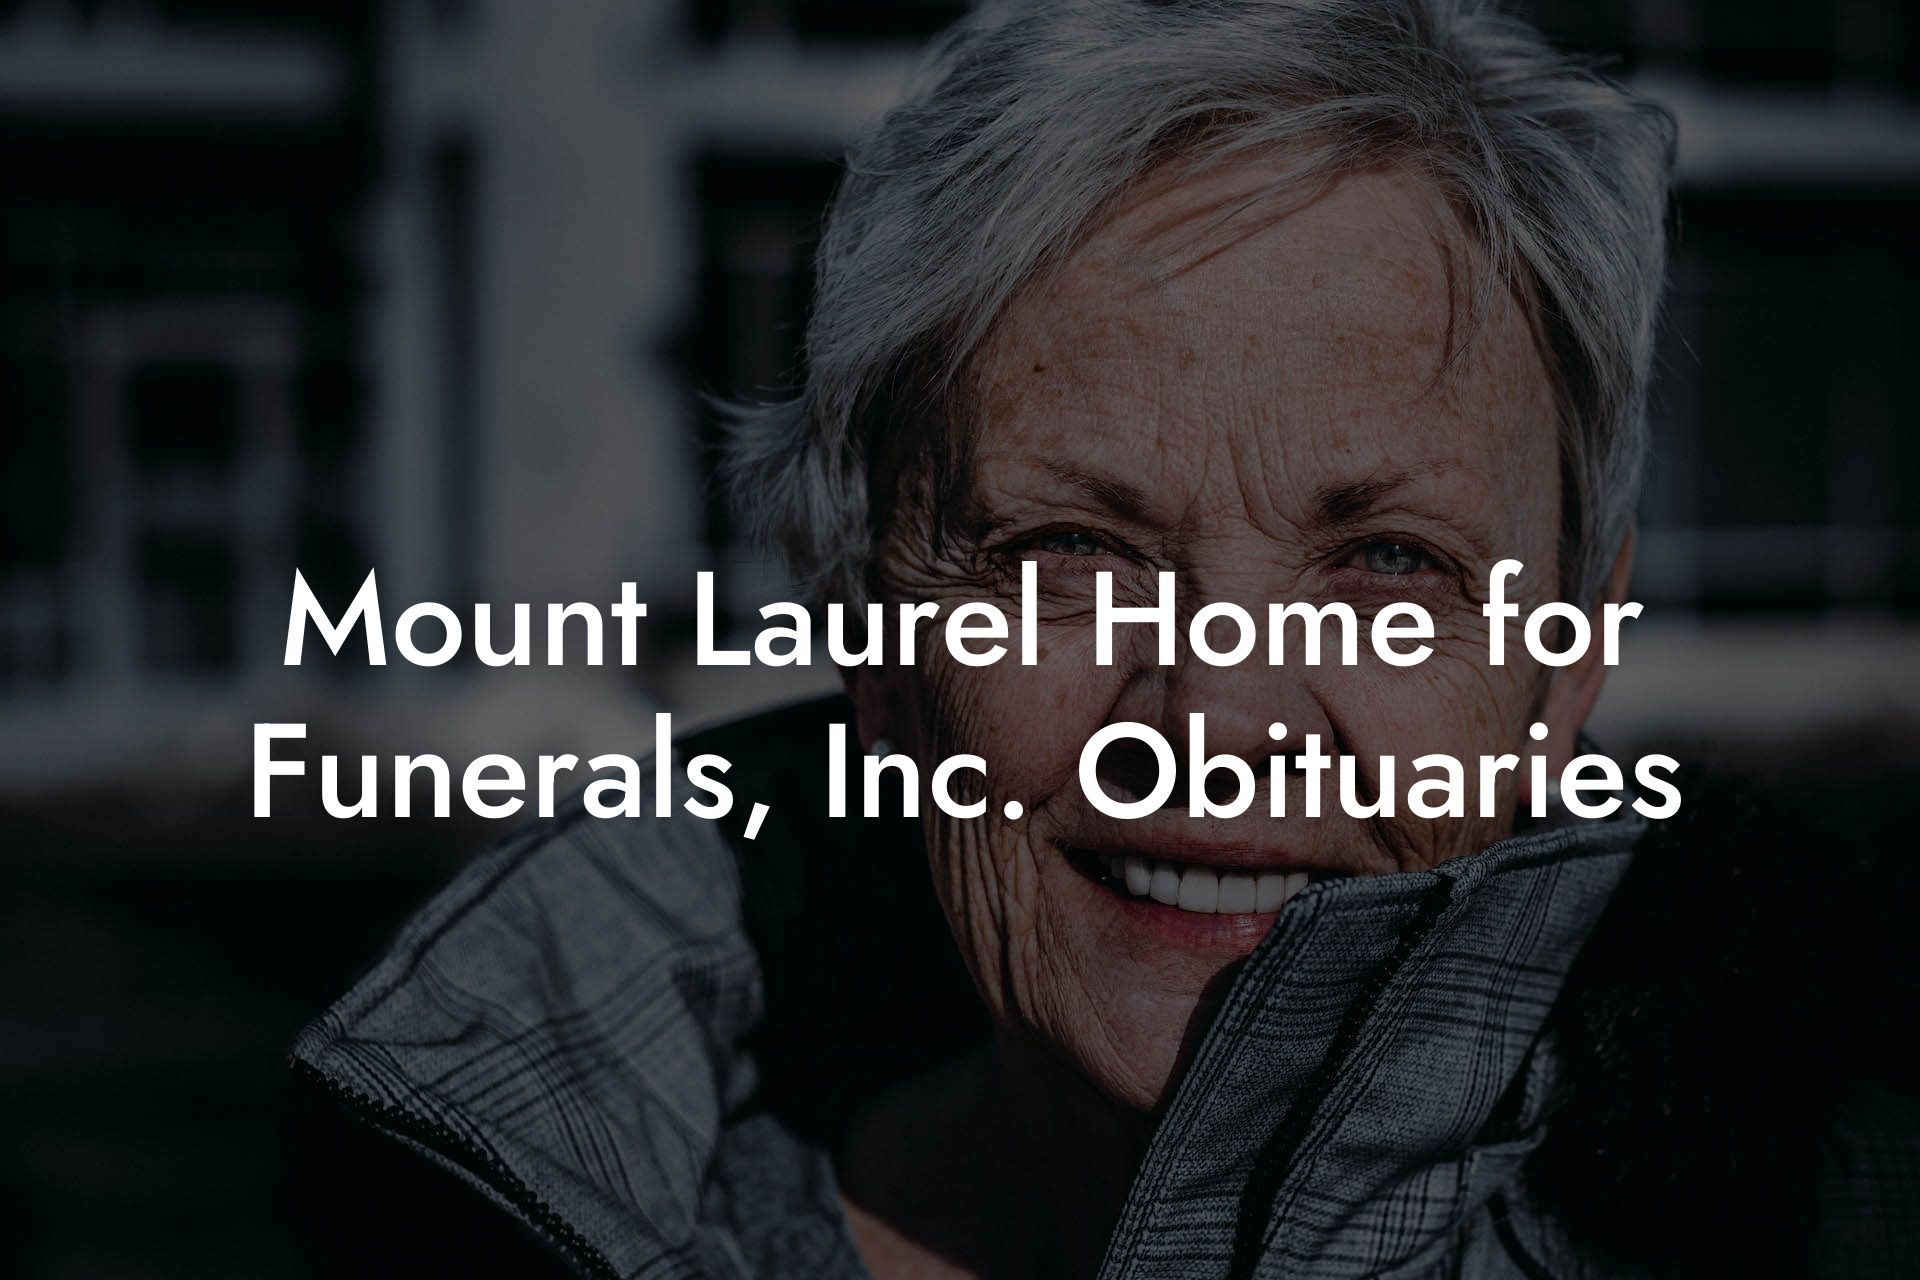 Mount Laurel Home for Funerals, Inc. Obituaries